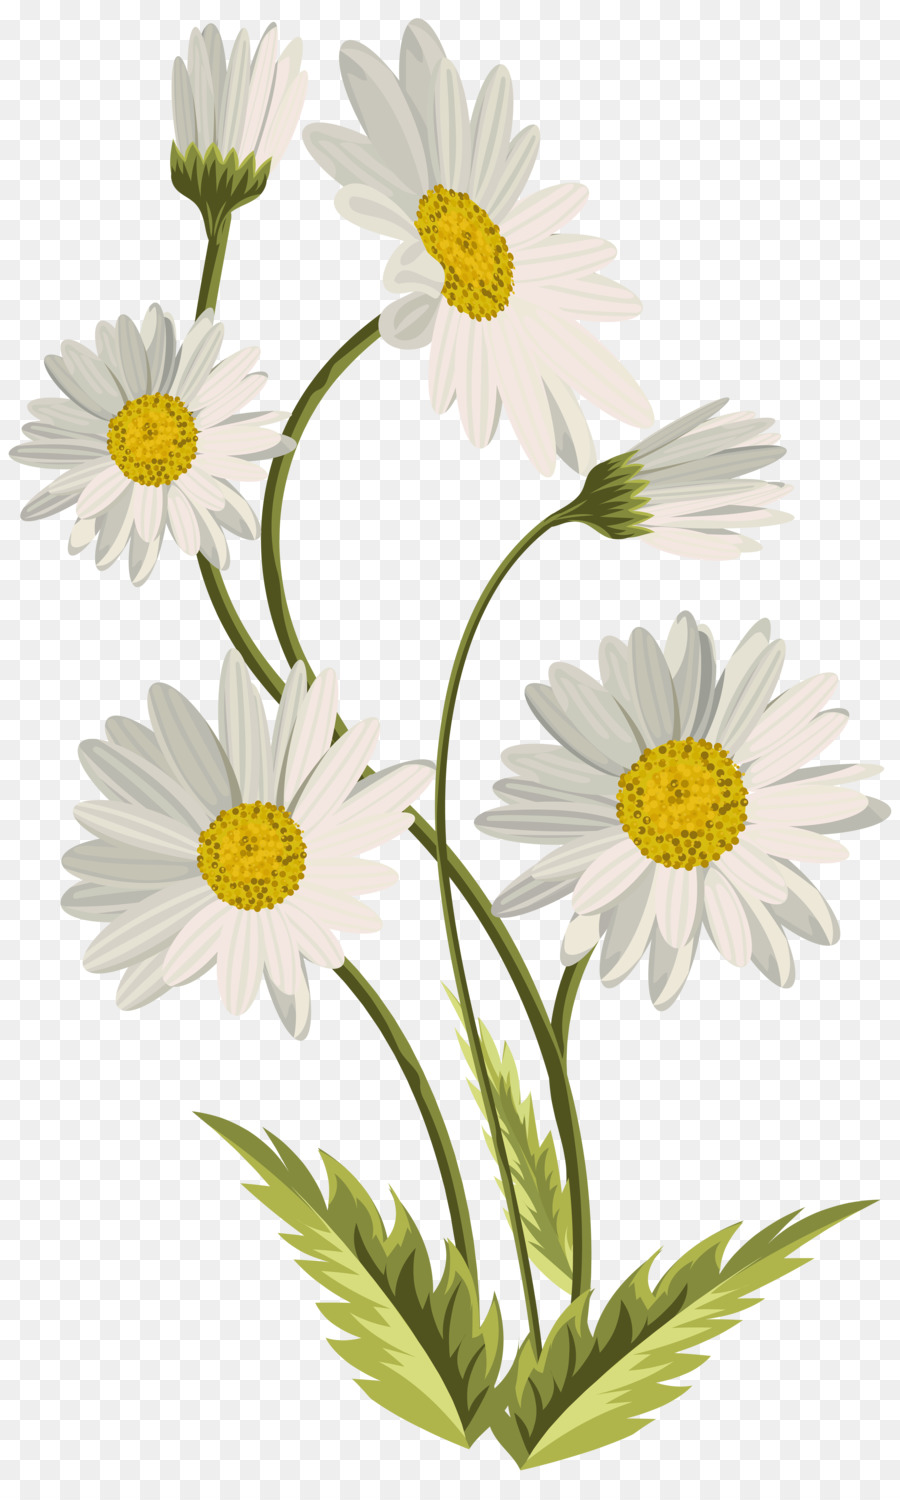 daisies clipart shasta daisy